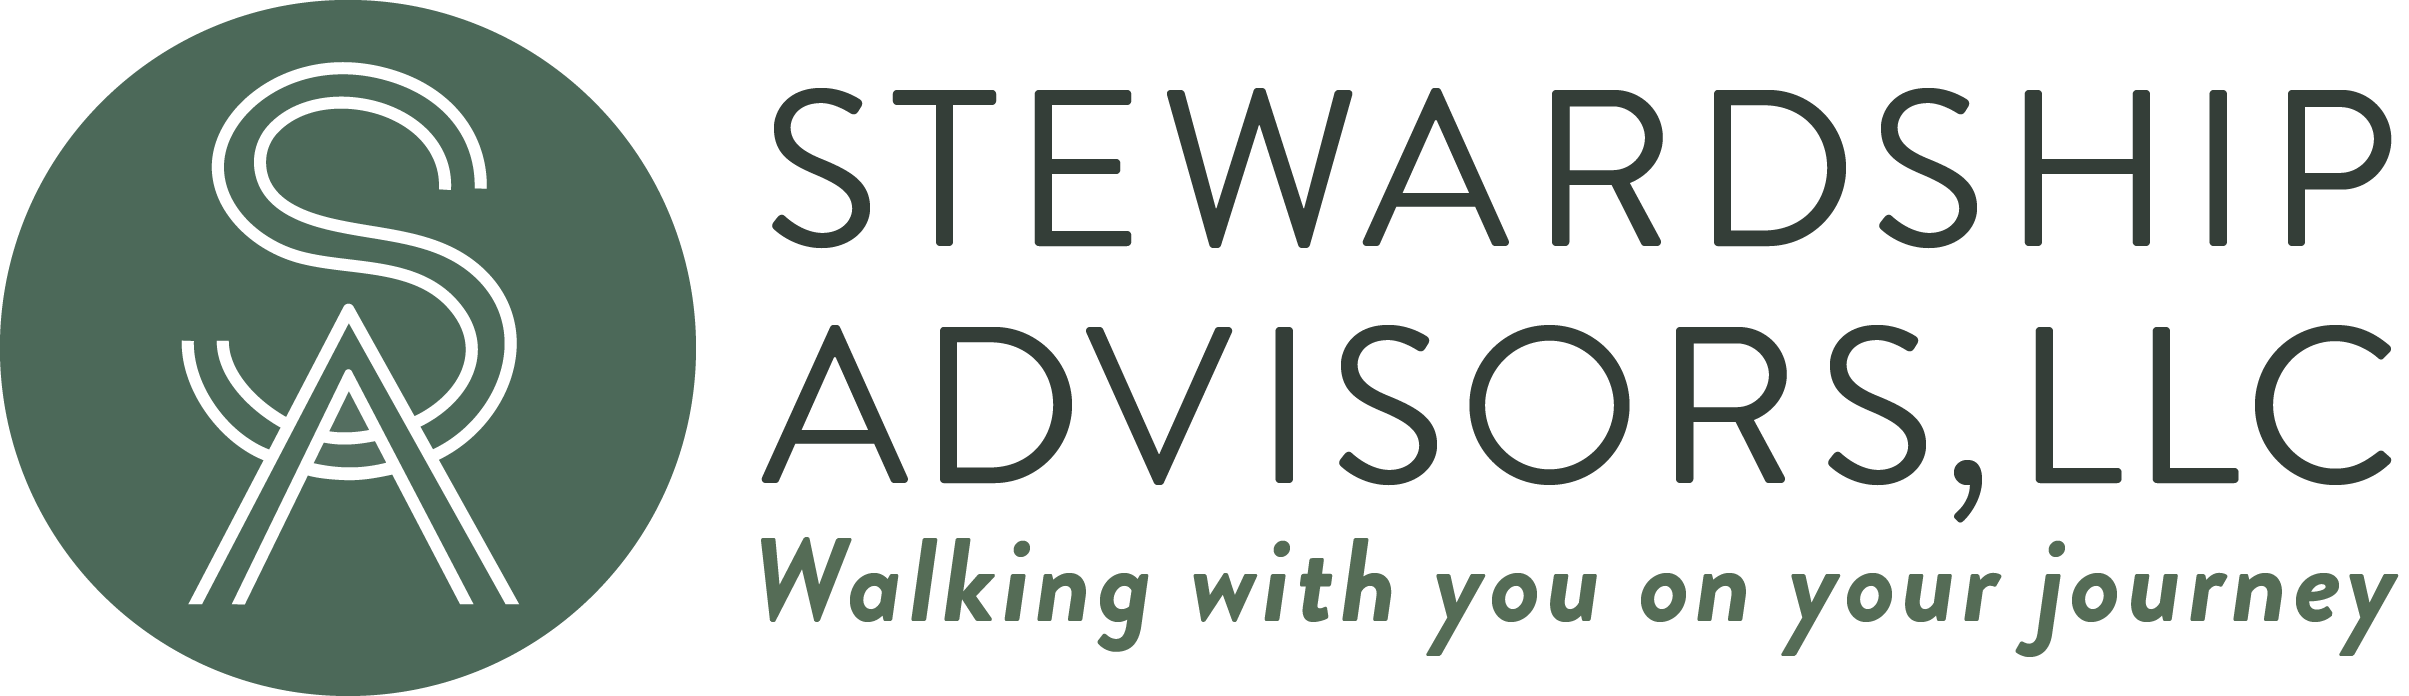 Stewardship Advisors, LLC